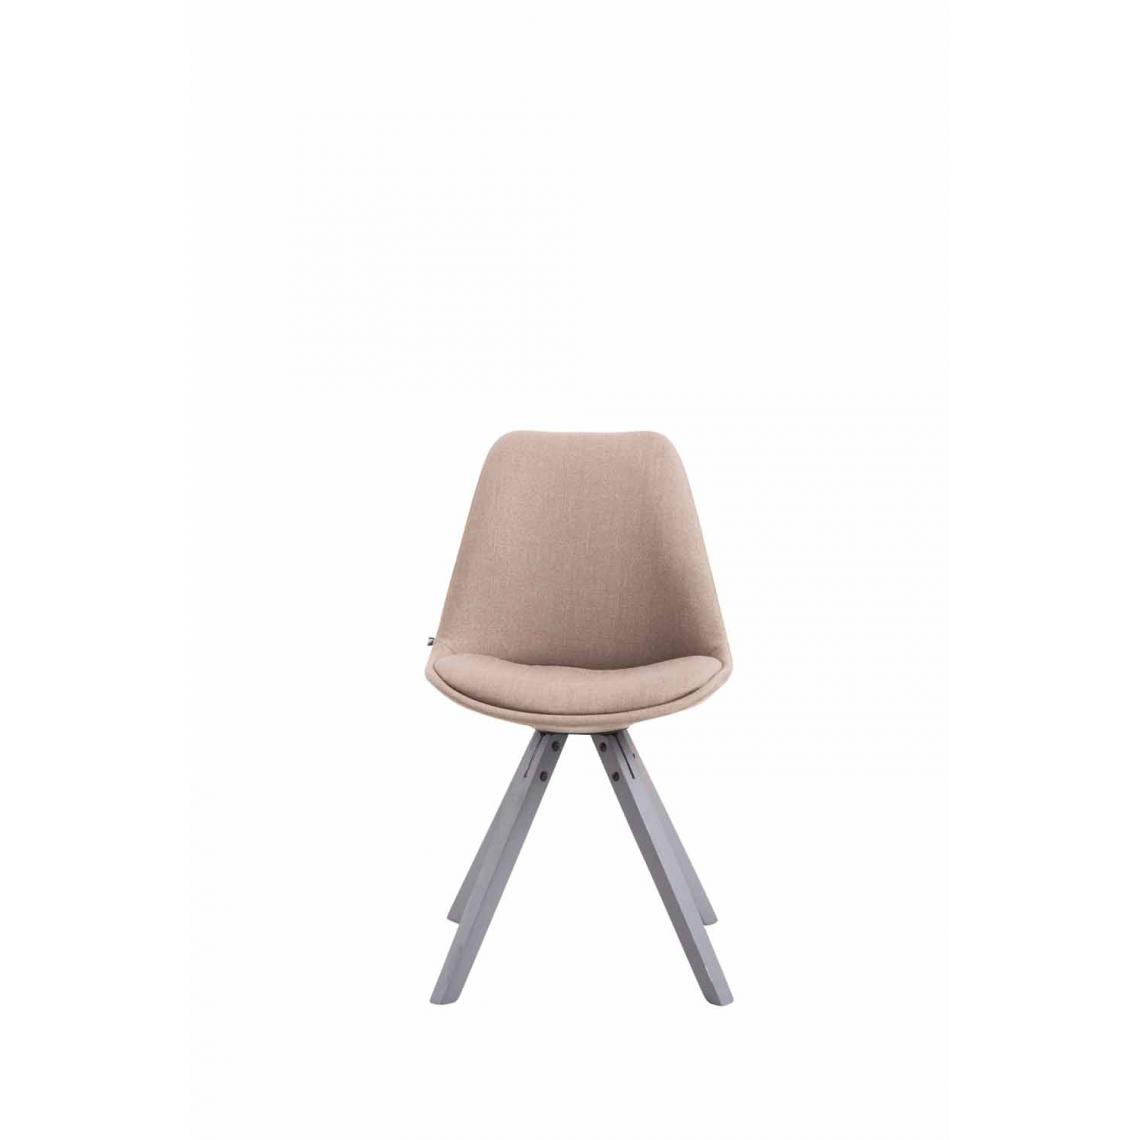 Icaverne - Moderne Chaise visiteur tissu edition Katmandou Square gris couleur taupe - Chaises